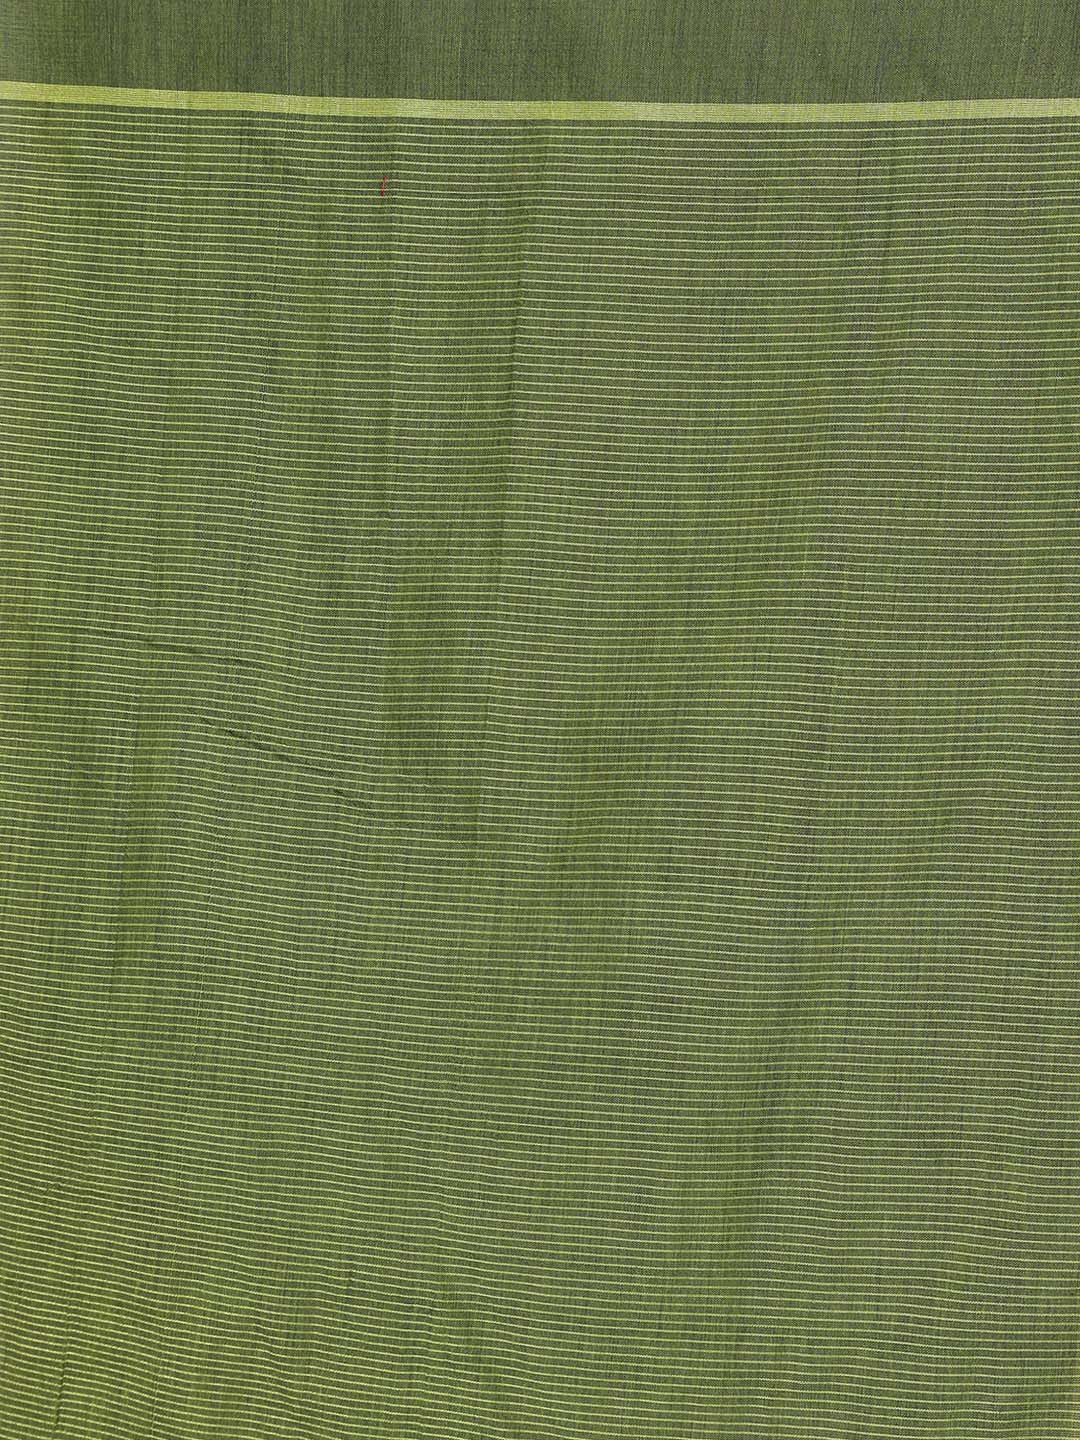 Indethnic Olive Bengal Handloom Pure Cotton Saree Work Saree - Saree Detail View